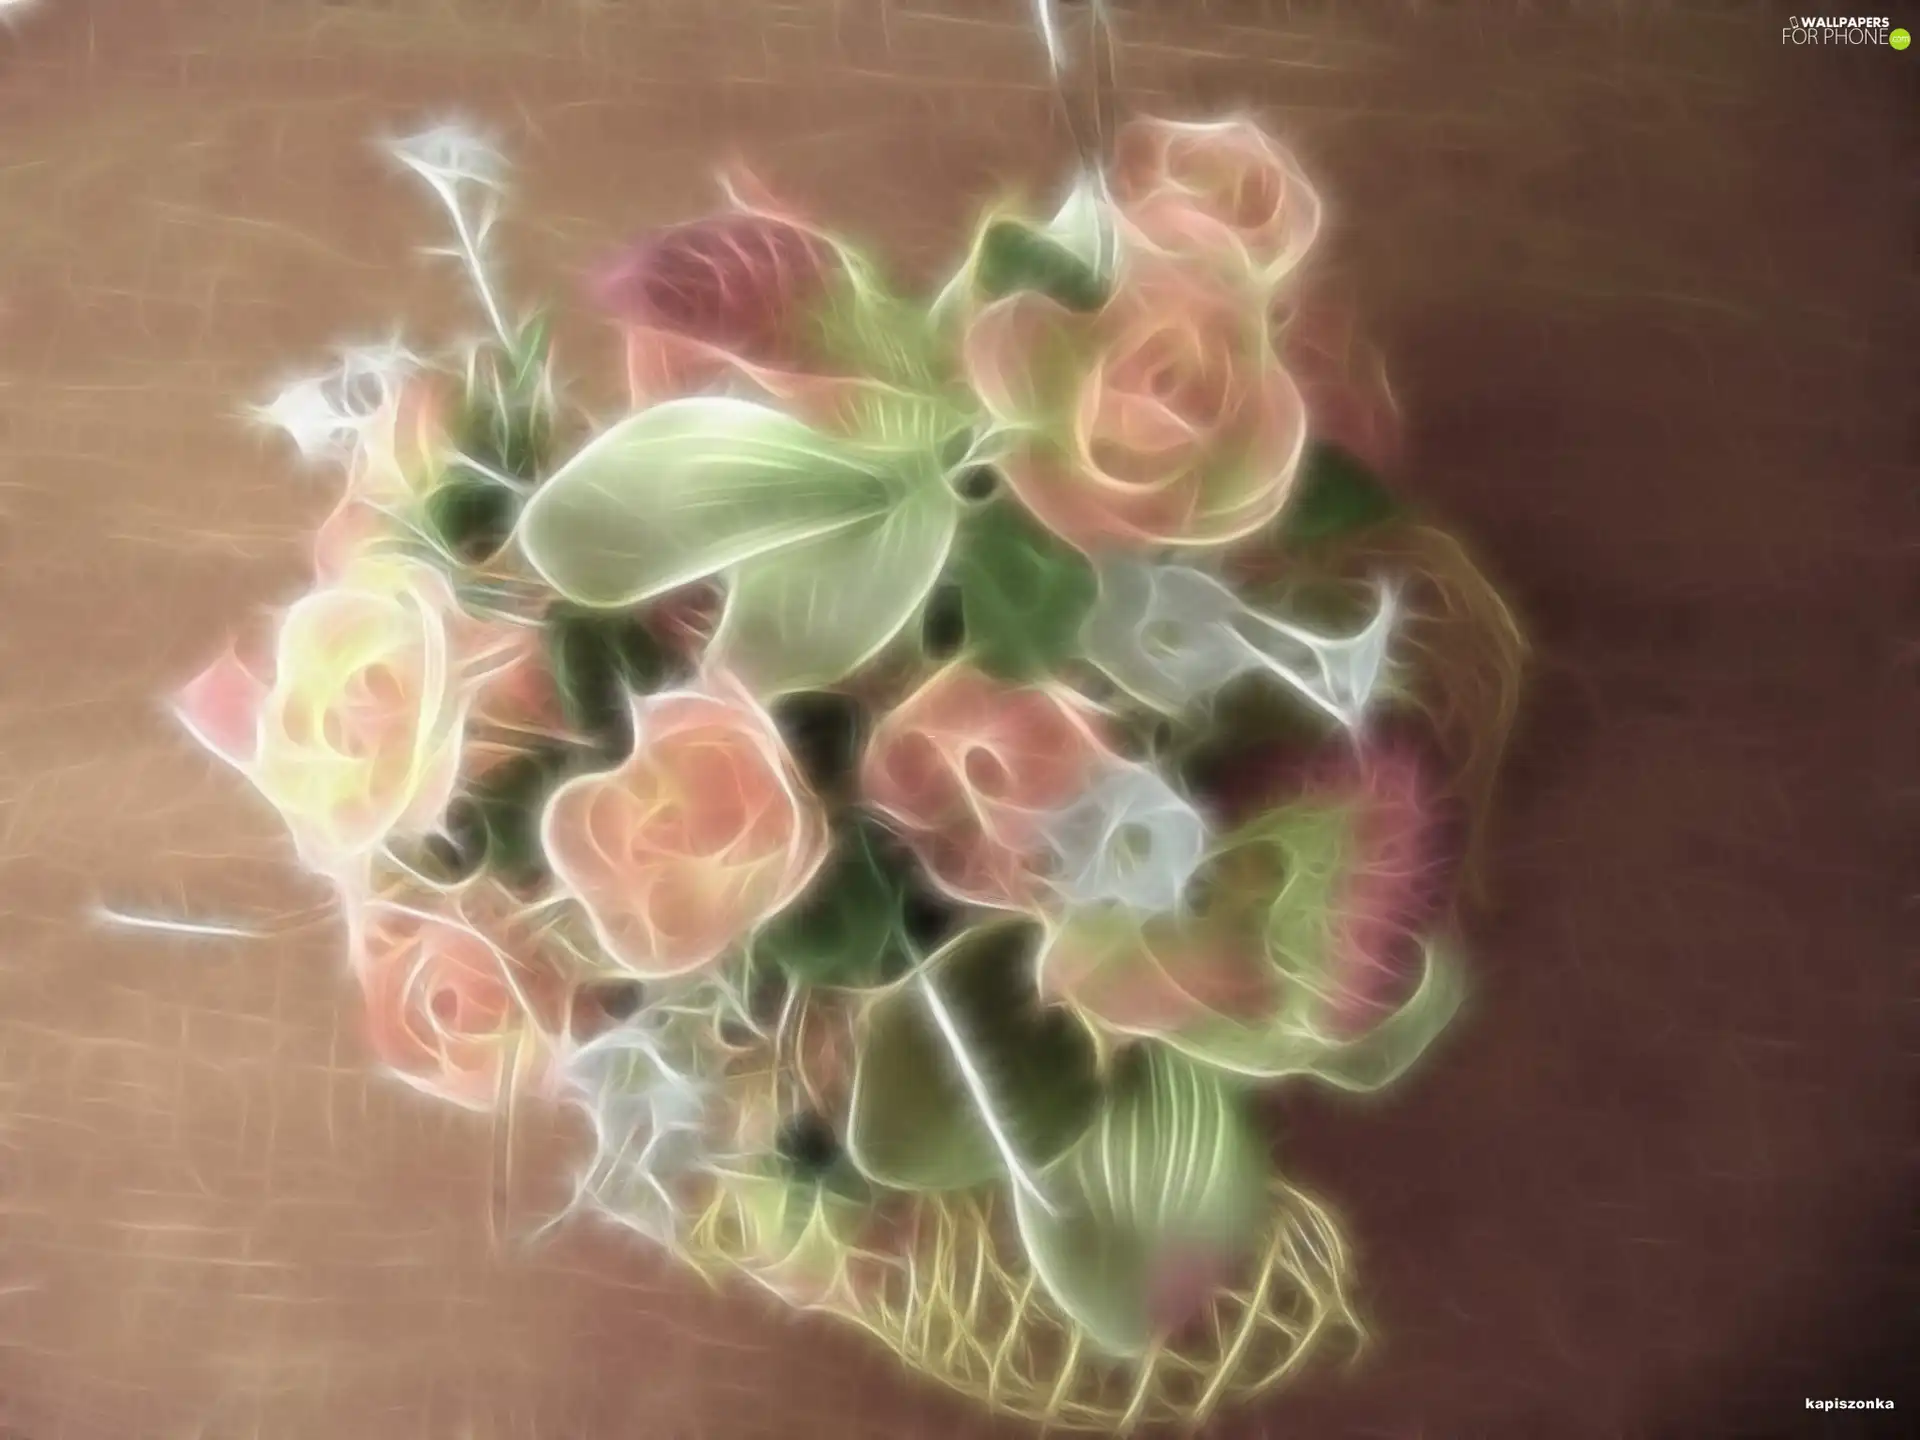 Fraktal, bouquet, flowers